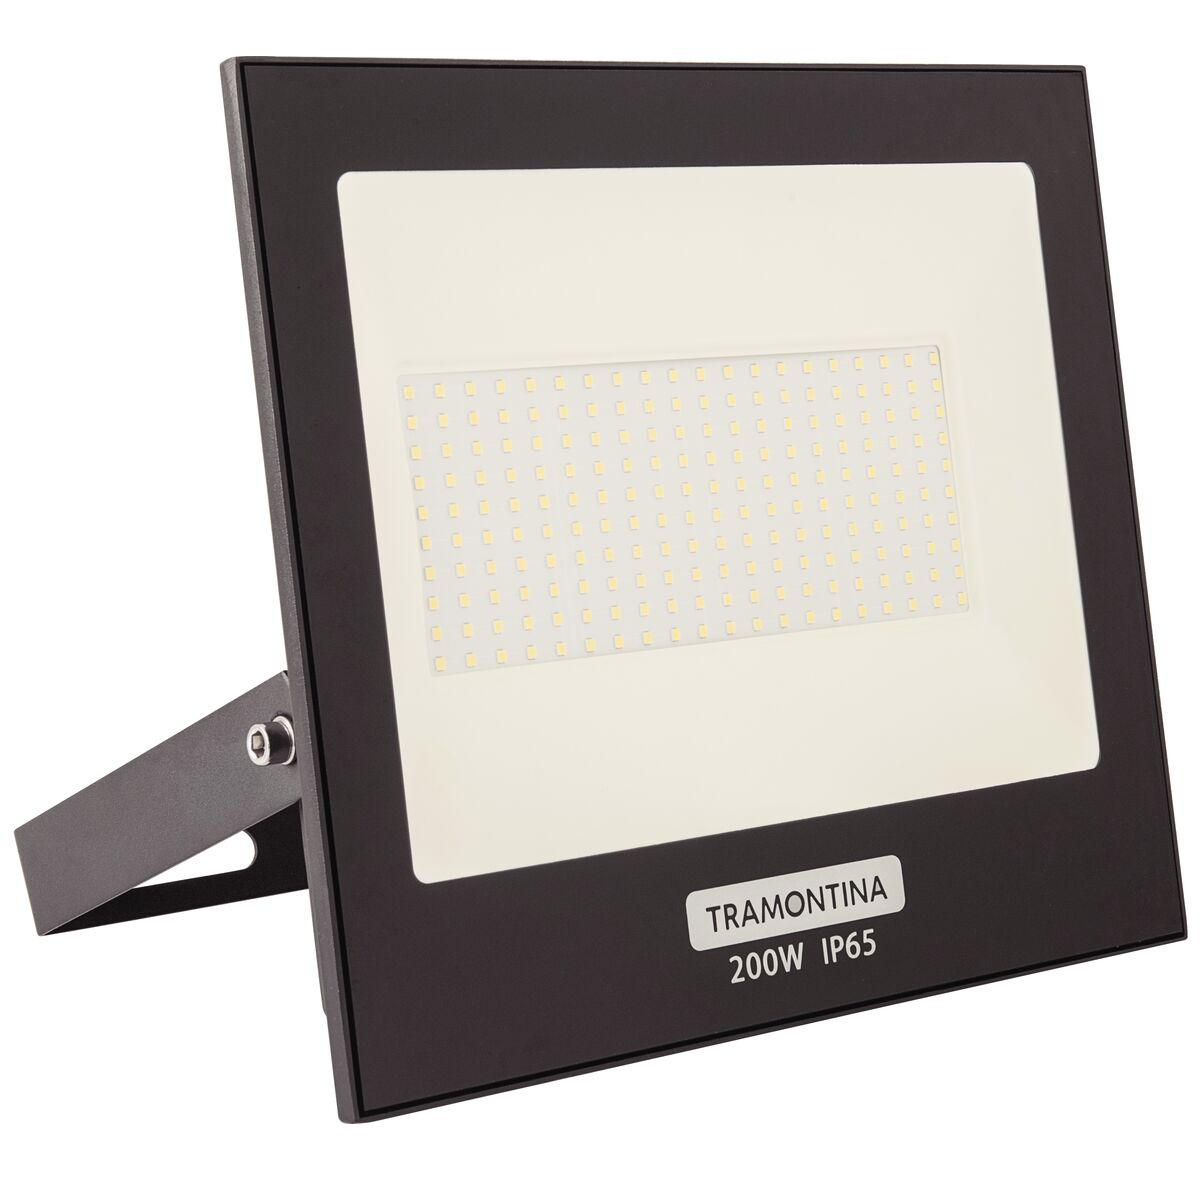 
Refletor LED Tramontina 200 W 6500 K Luz Branca
